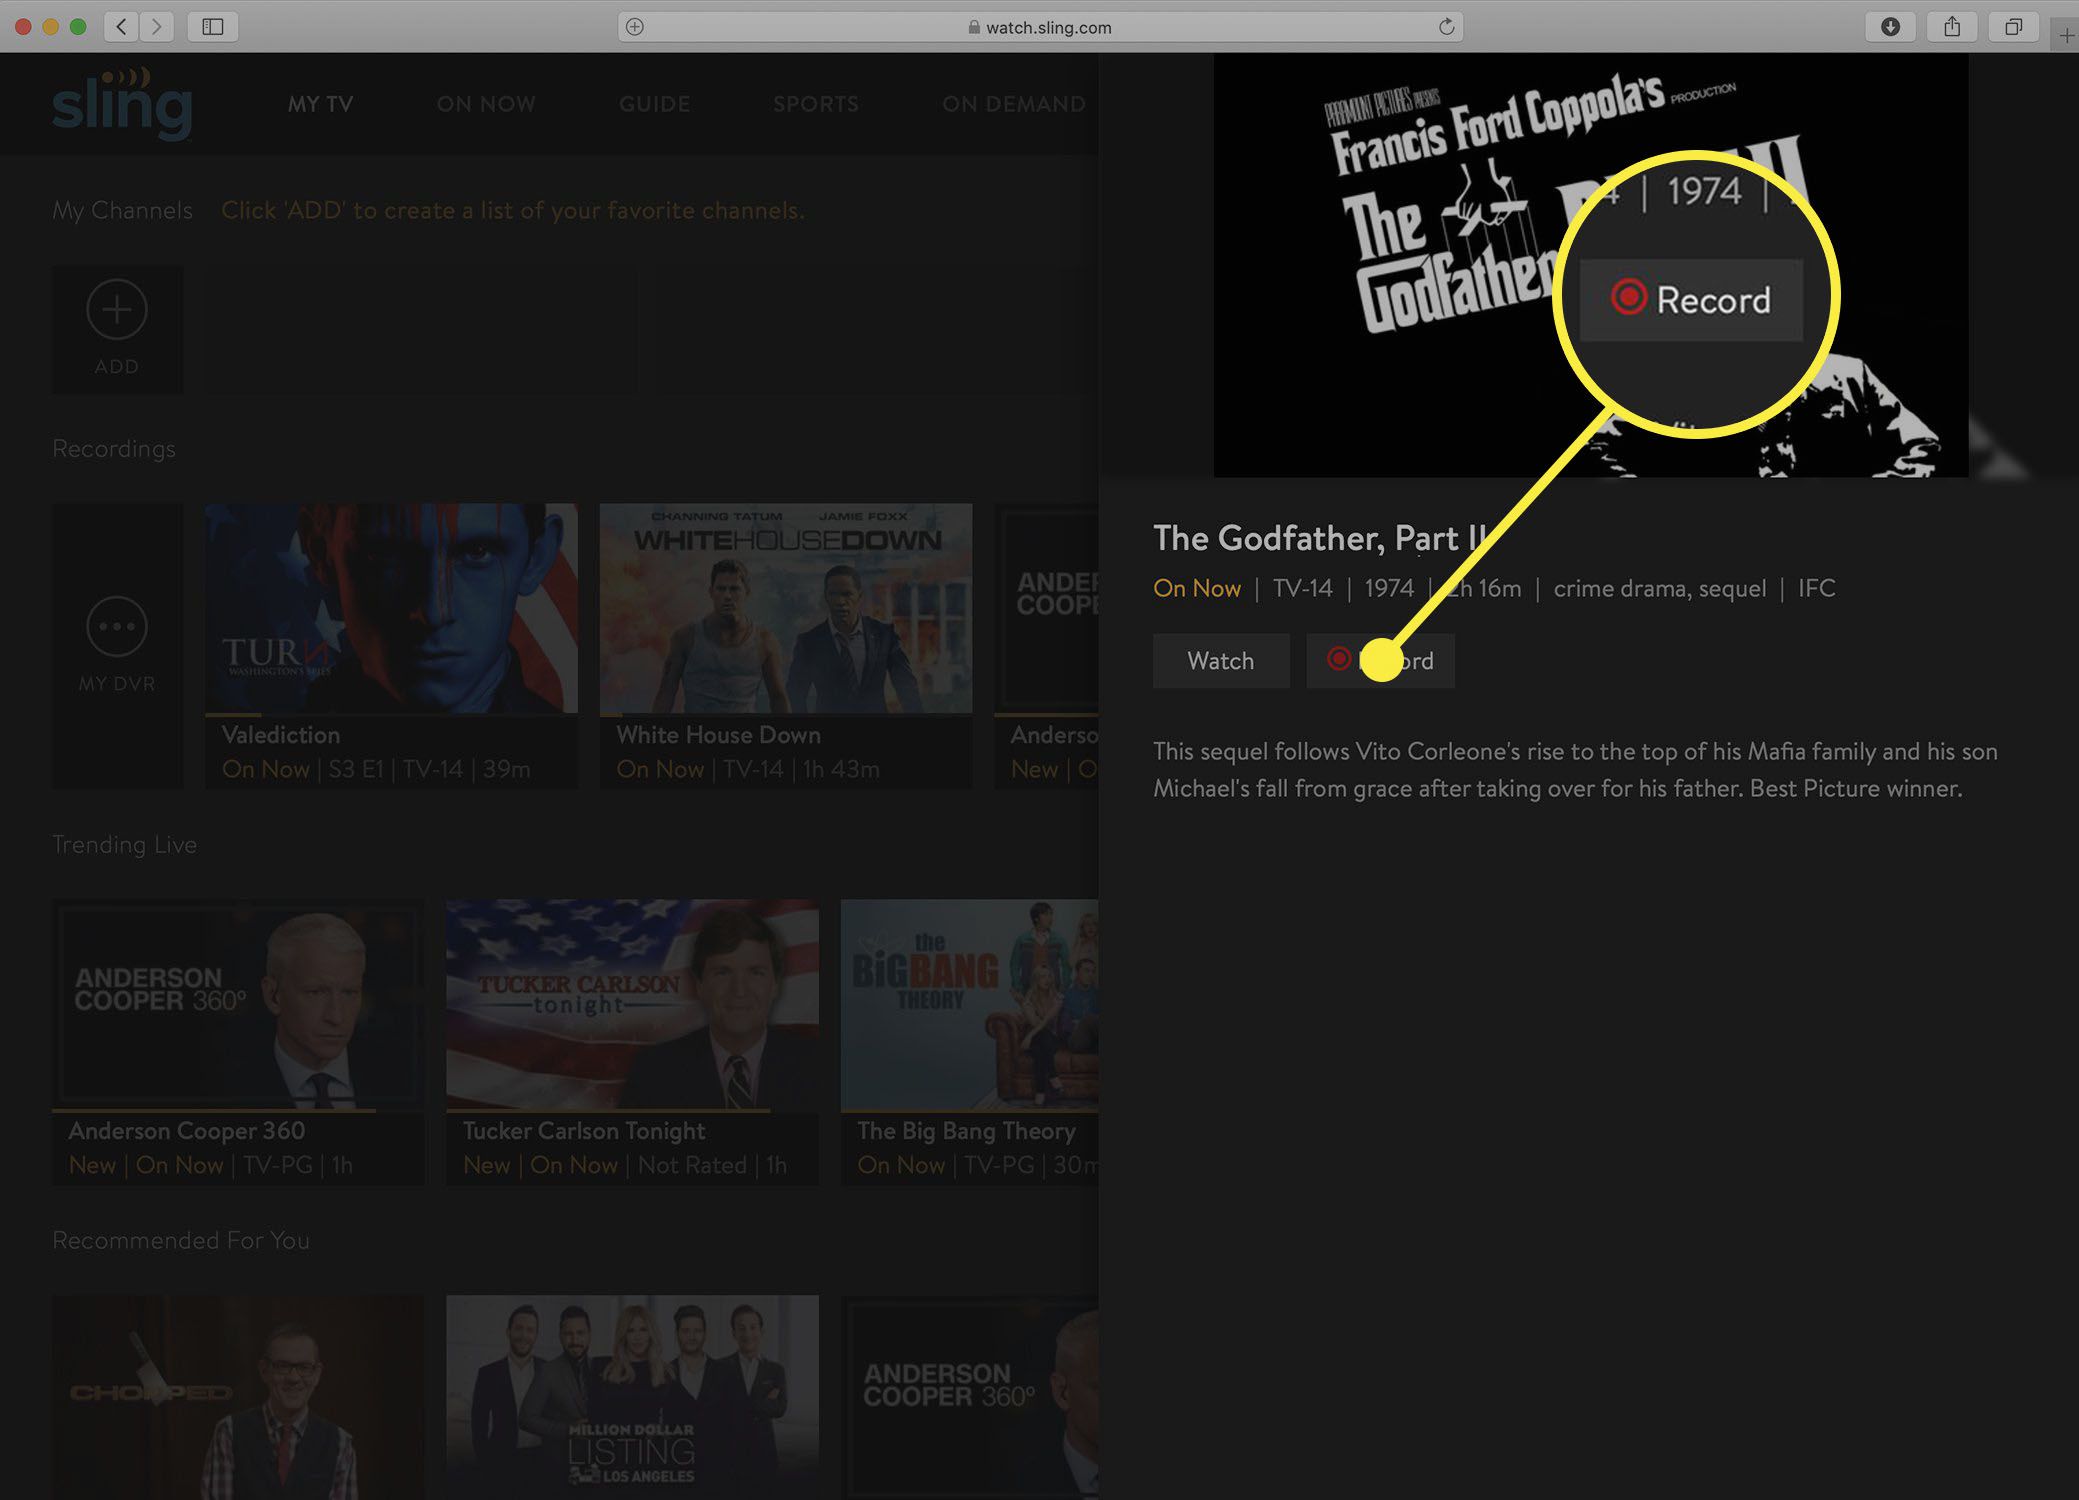 Screenshot obrazovky s informacemi o Sling TV show po zastavení záznamu DVR.